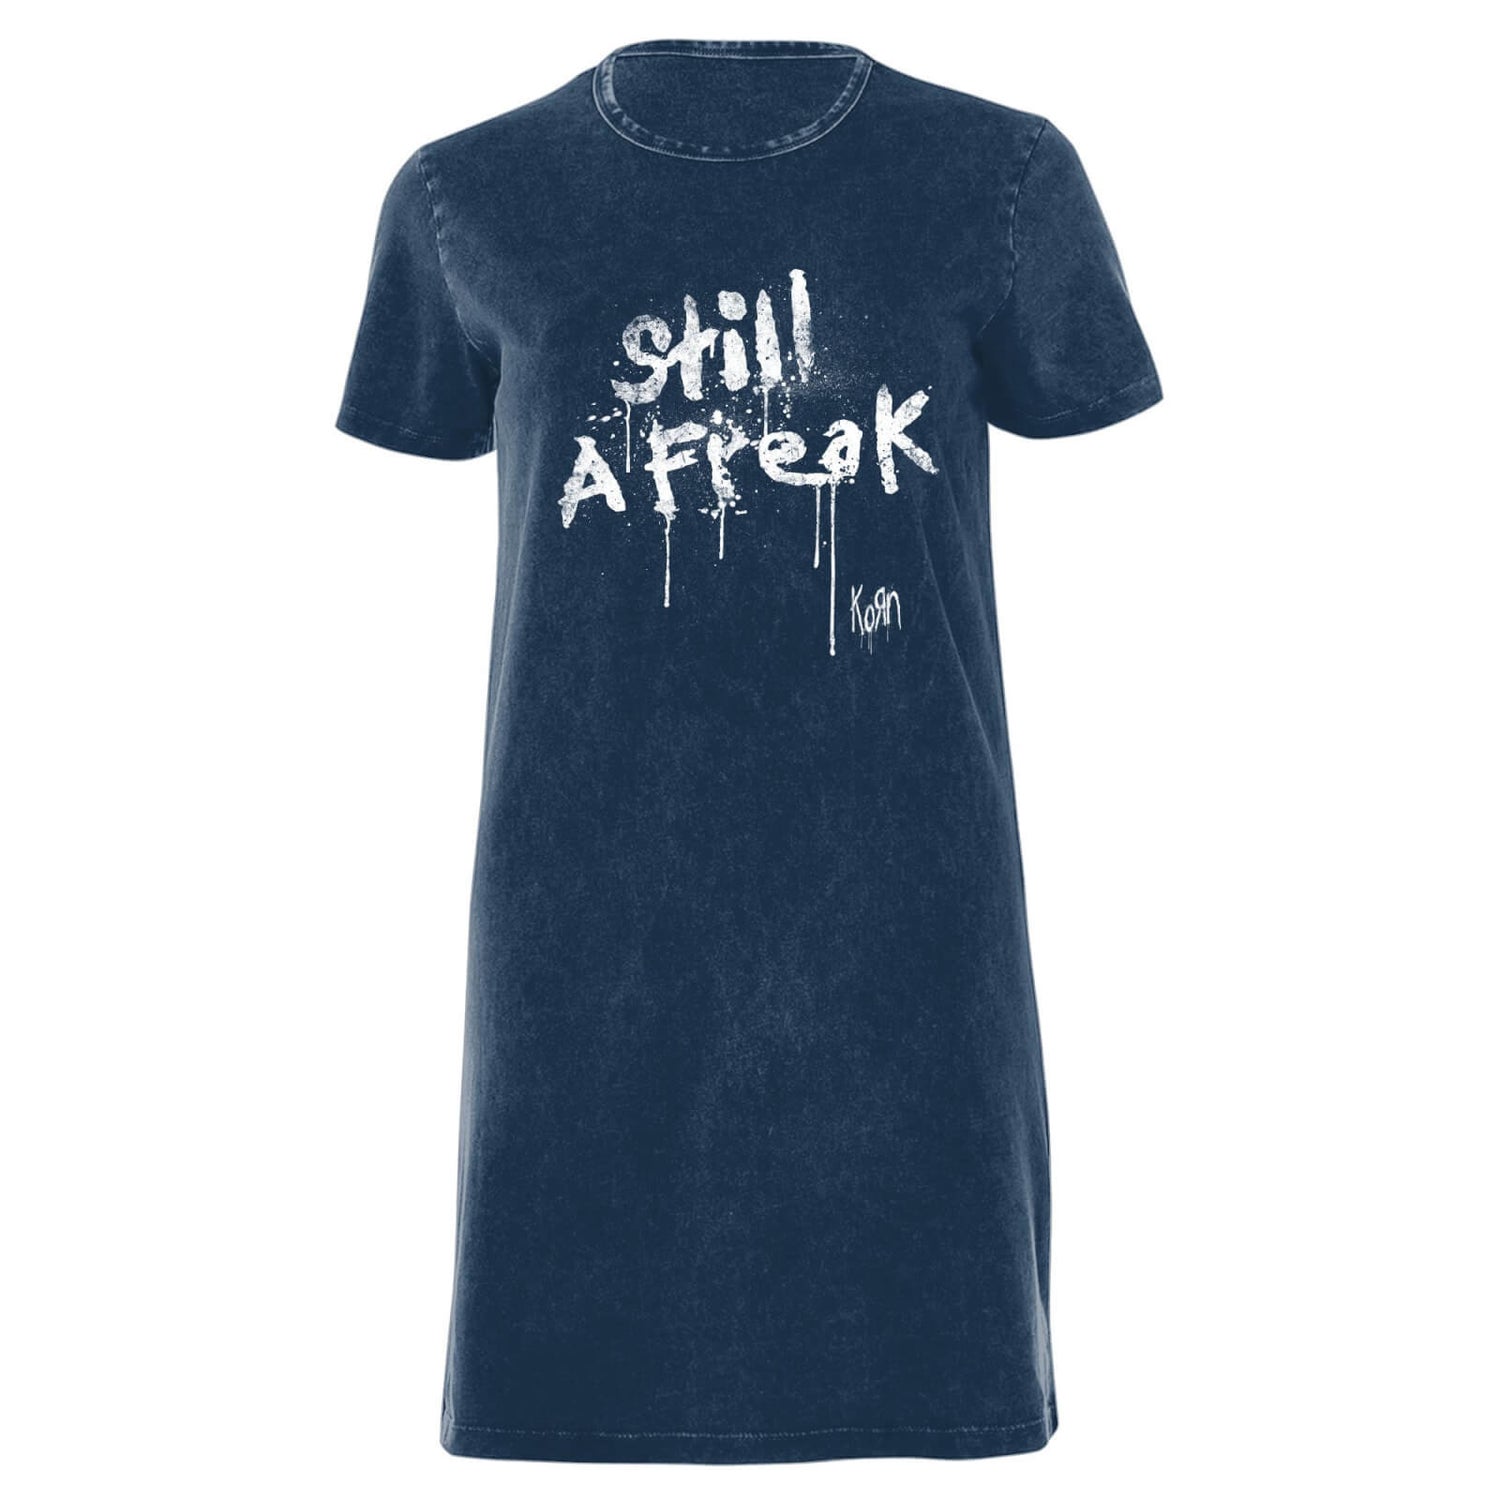 Korn Still A Freak Women's T-Shirt Dress - Navy Acid Wash - M